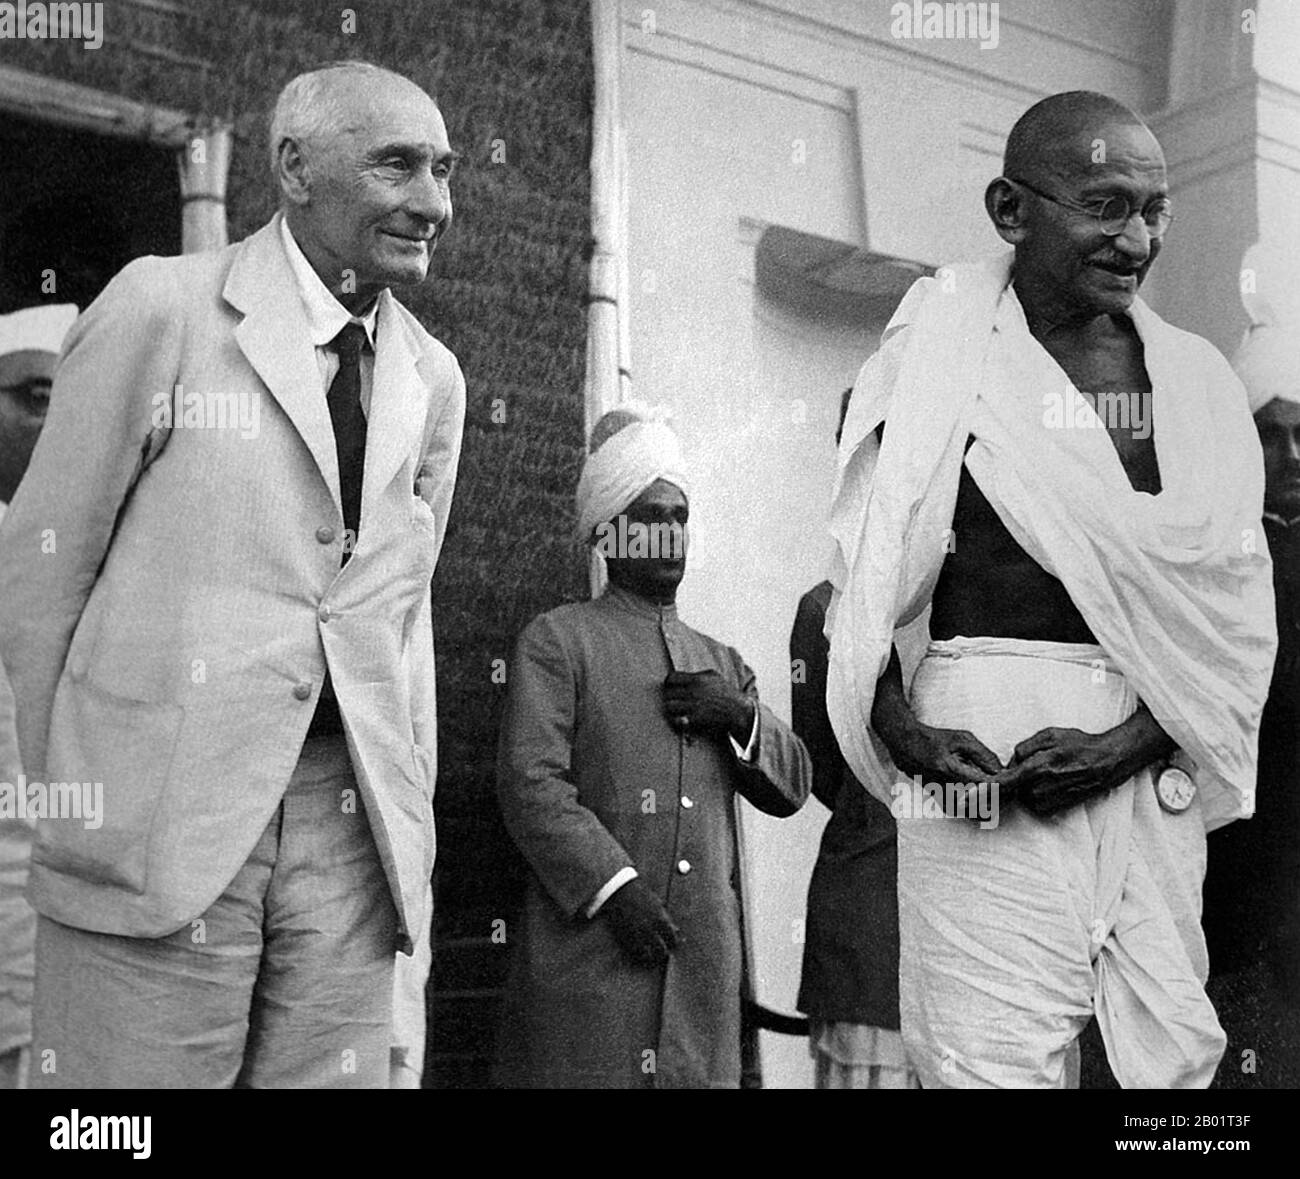 Mohandas Karamchand Gandhi (2 de octubre de 1869 – 30 de enero de 1948) fue el líder político e ideológico preeminente de la India durante el movimiento de independencia de la India. Fue pionero en satyagraha. Esto se define como la resistencia a la tiranía a través de la desobediencia civil masiva, una filosofía firmemente fundada en ahimsa, o la no violencia total. Este concepto ayudó a la India a ganar independencia e inspiró movimientos por los derechos civiles y la libertad en todo el mundo. Gandhi es a menudo referido como Mahatma Gandhi o 'Gran Alma', un honorífico primero aplicado a él por Rabindranath Tagore. En la India también se le llama Bapu (Guj Foto de stock